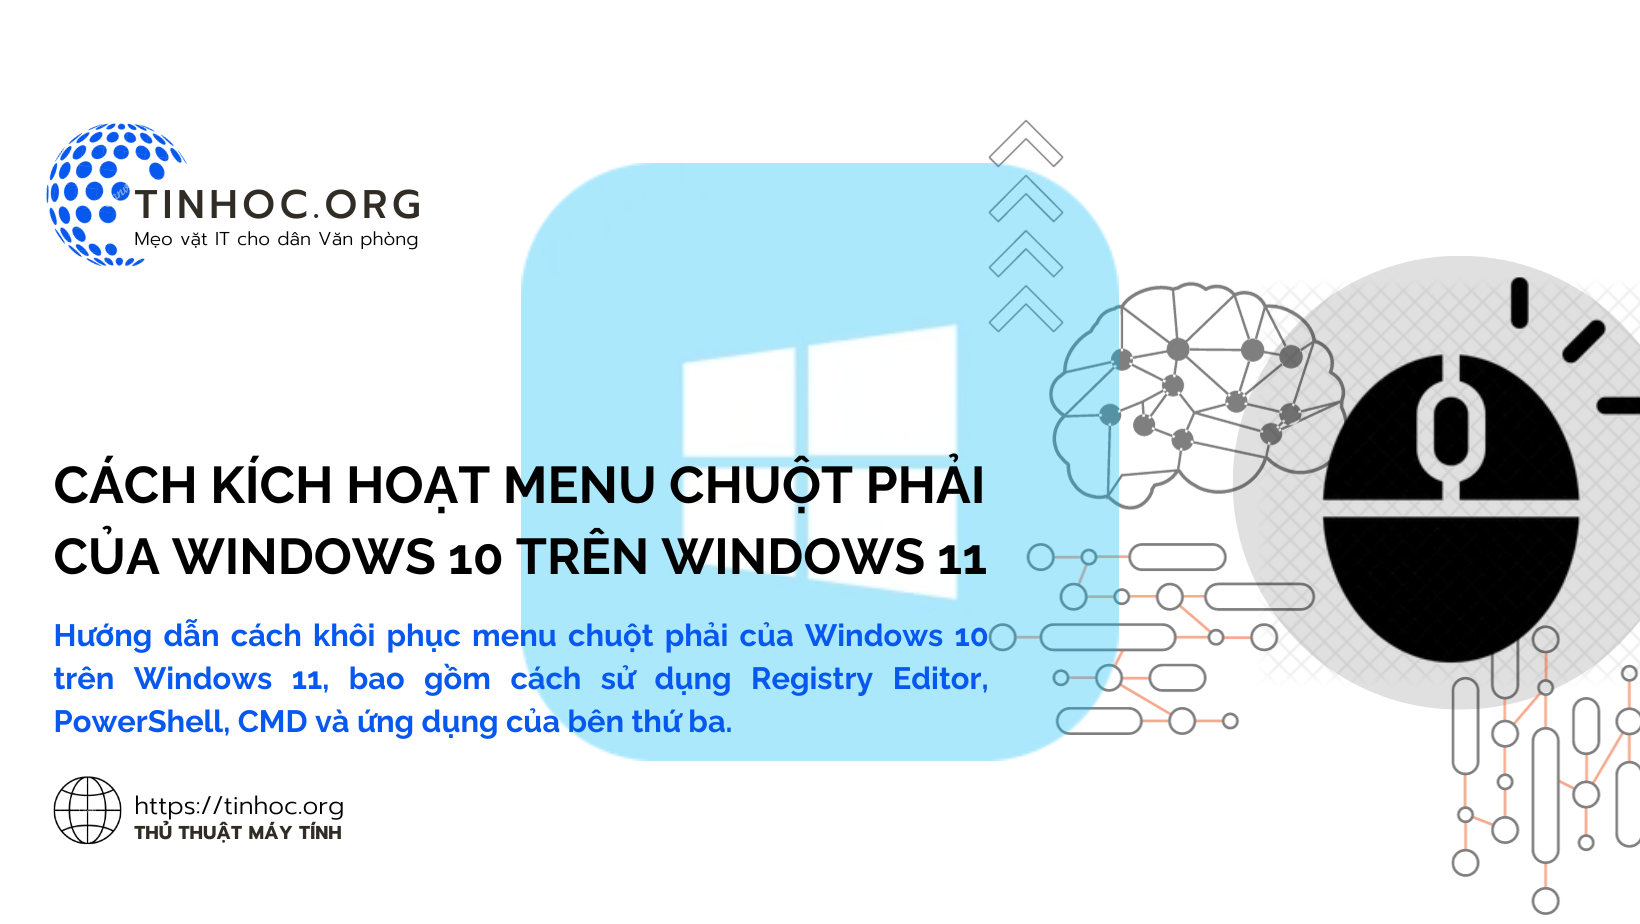 Hướng dẫn cách khôi phục menu chuột phải của Windows 10 trên Windows 11, bao gồm cách sử dụng Registry Editor, PowerShell, CMD và ứng dụng của bên thứ ba.